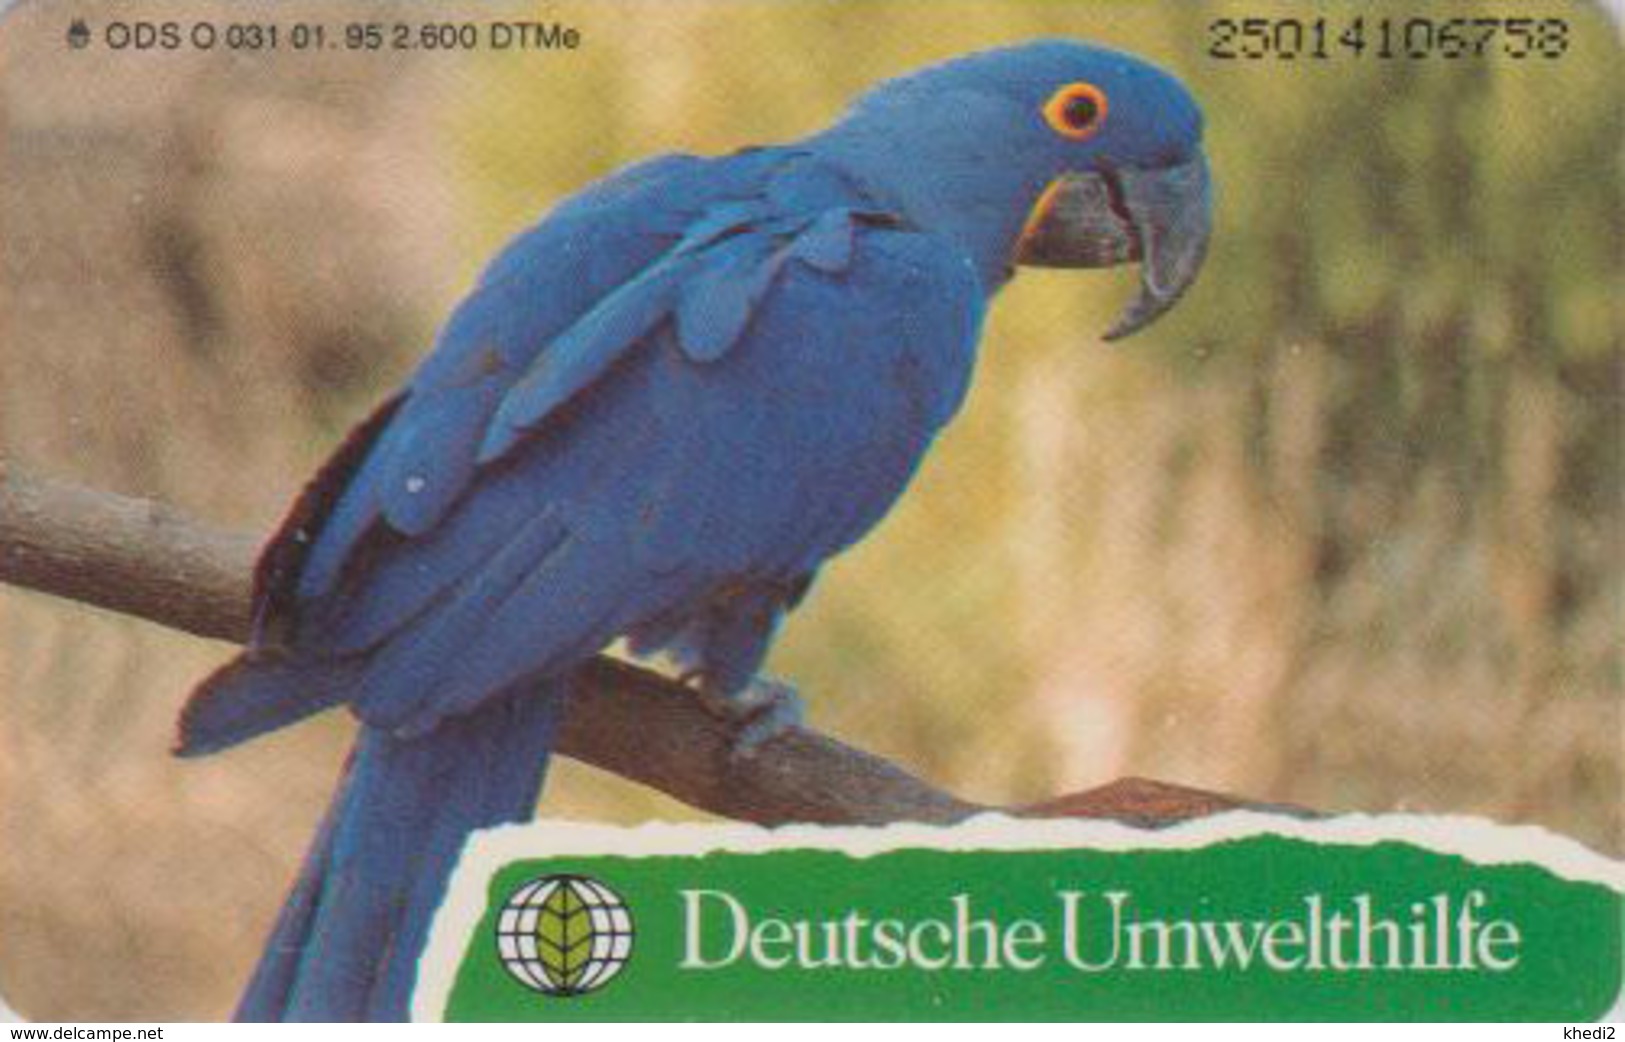 Télécarte à Puce Allemagne - DEUTSCHE UMWELTHILFE - ANIMAL - OISEAU ARA PERROQUET PARROT BIRD - Chip Phonecard - Papageien